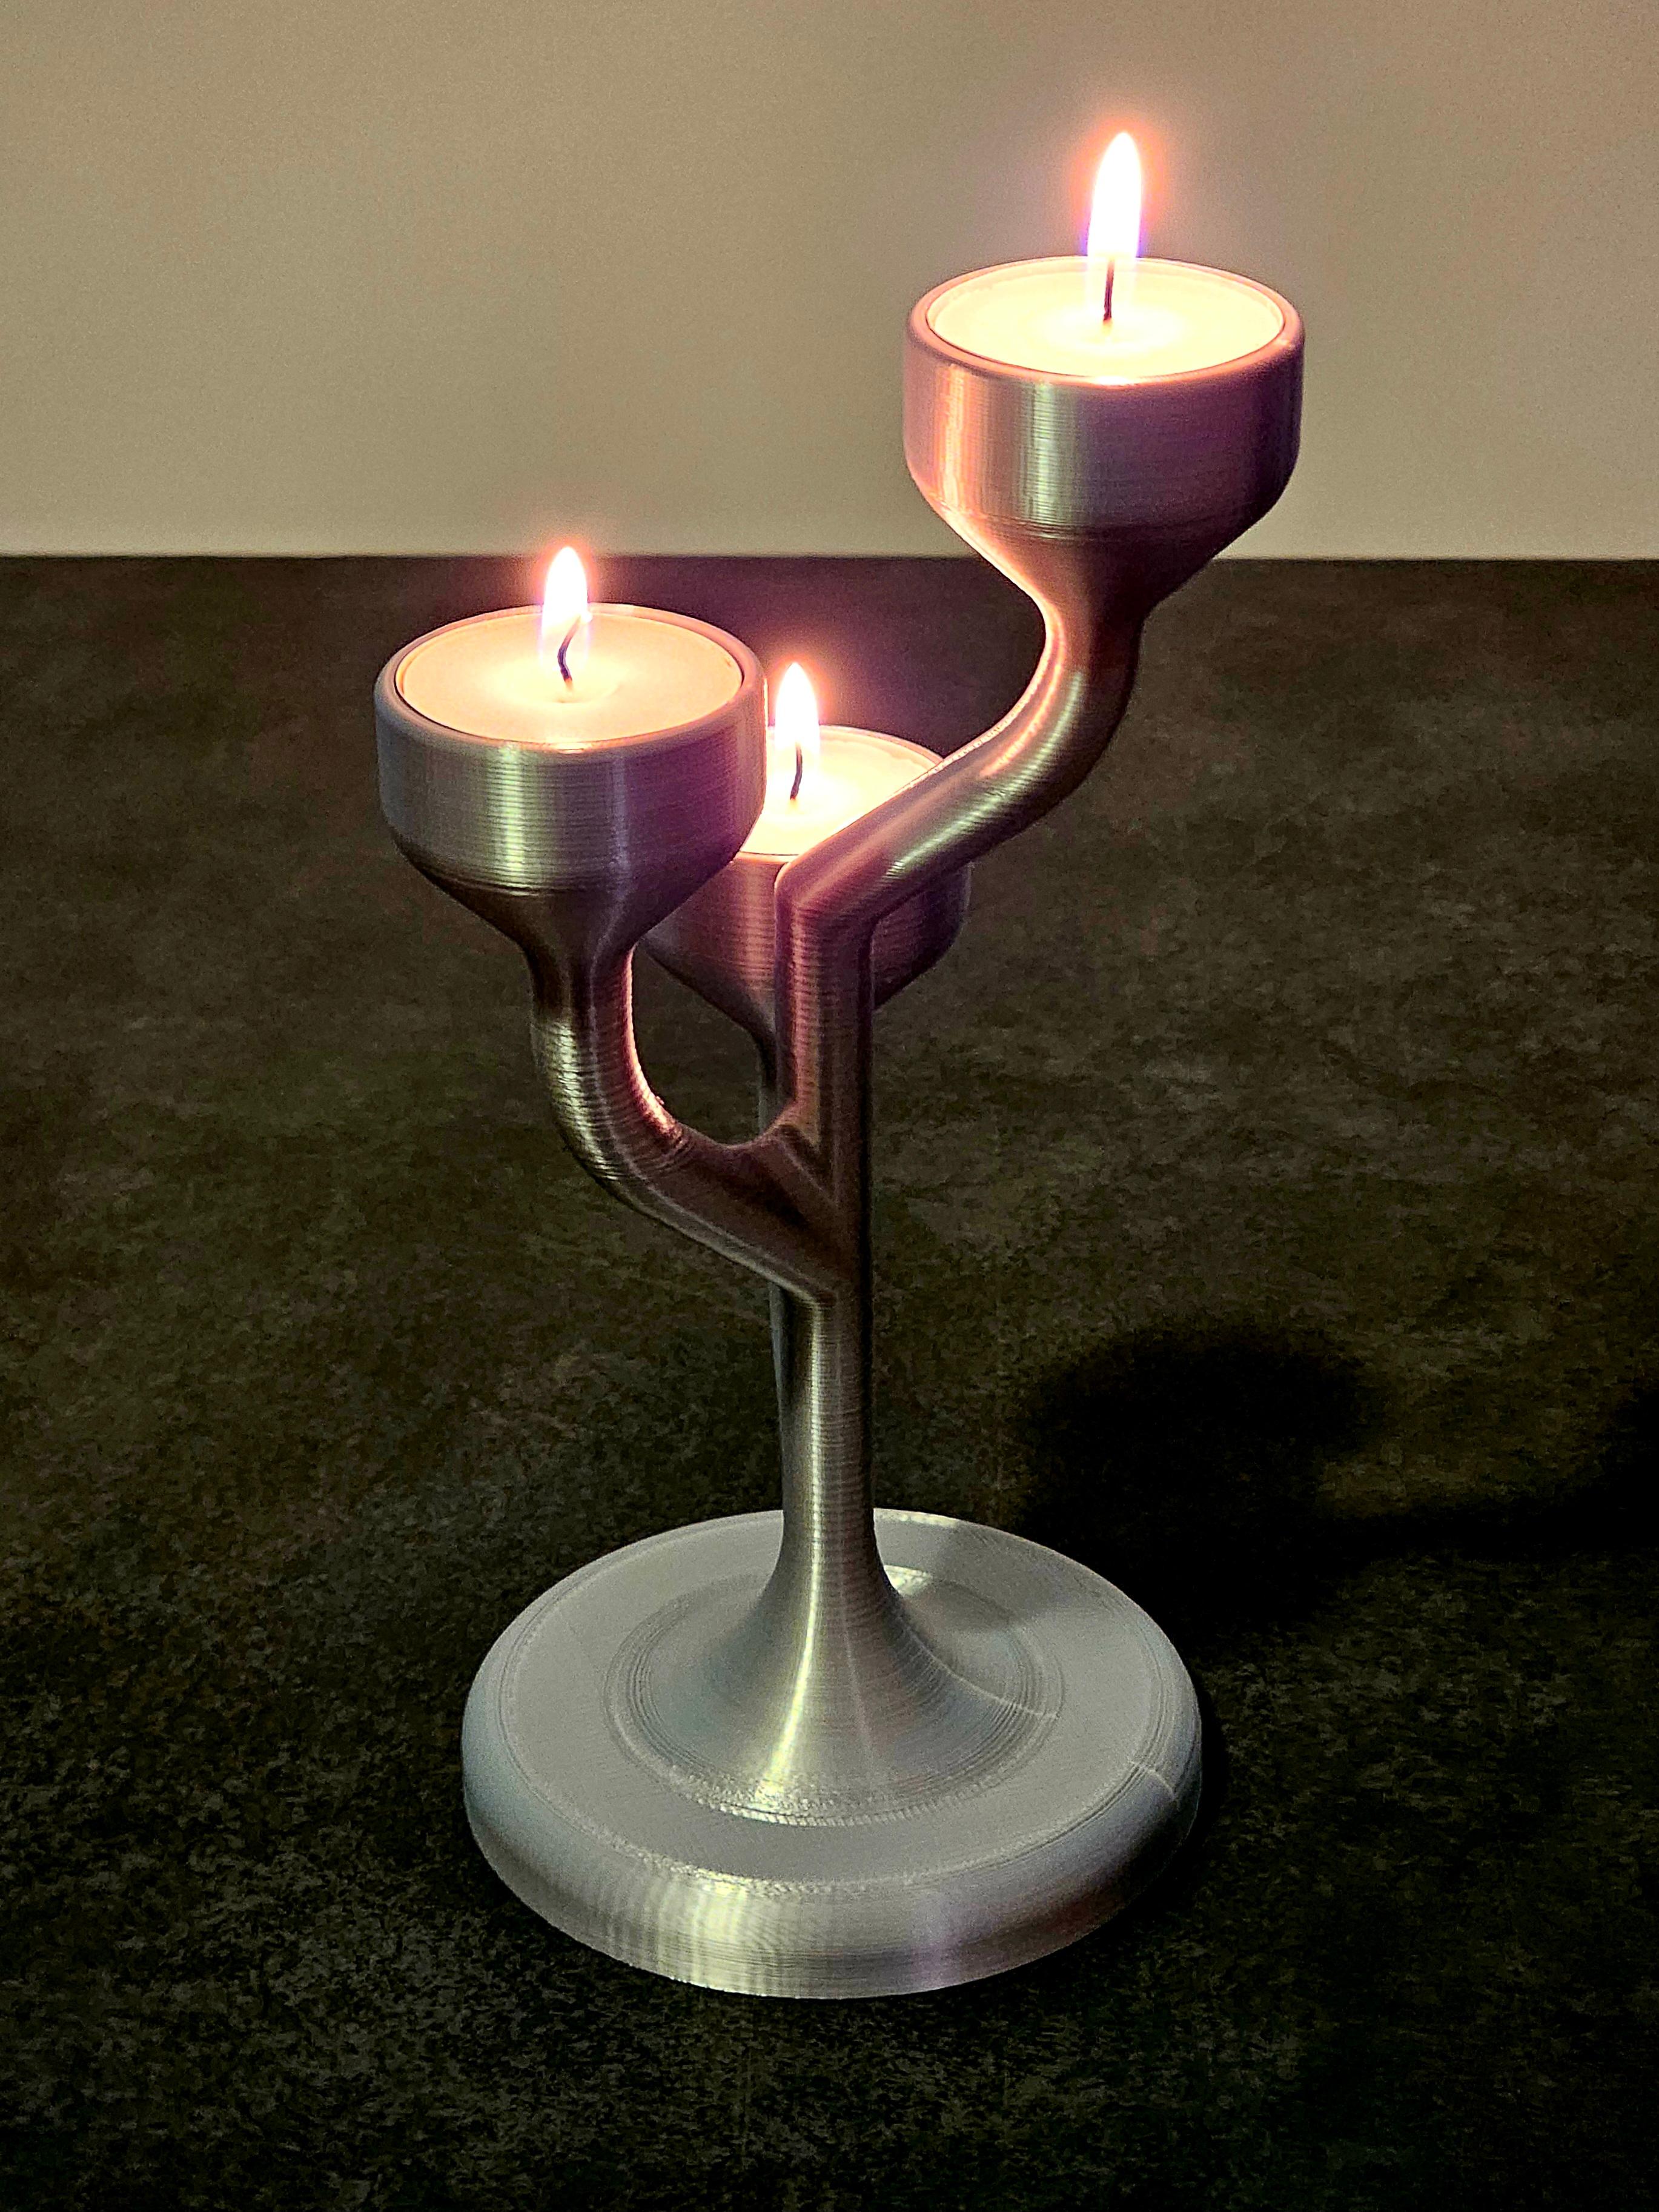 Candle Holder in Sleek Design for 3 Tea Lights 3d model